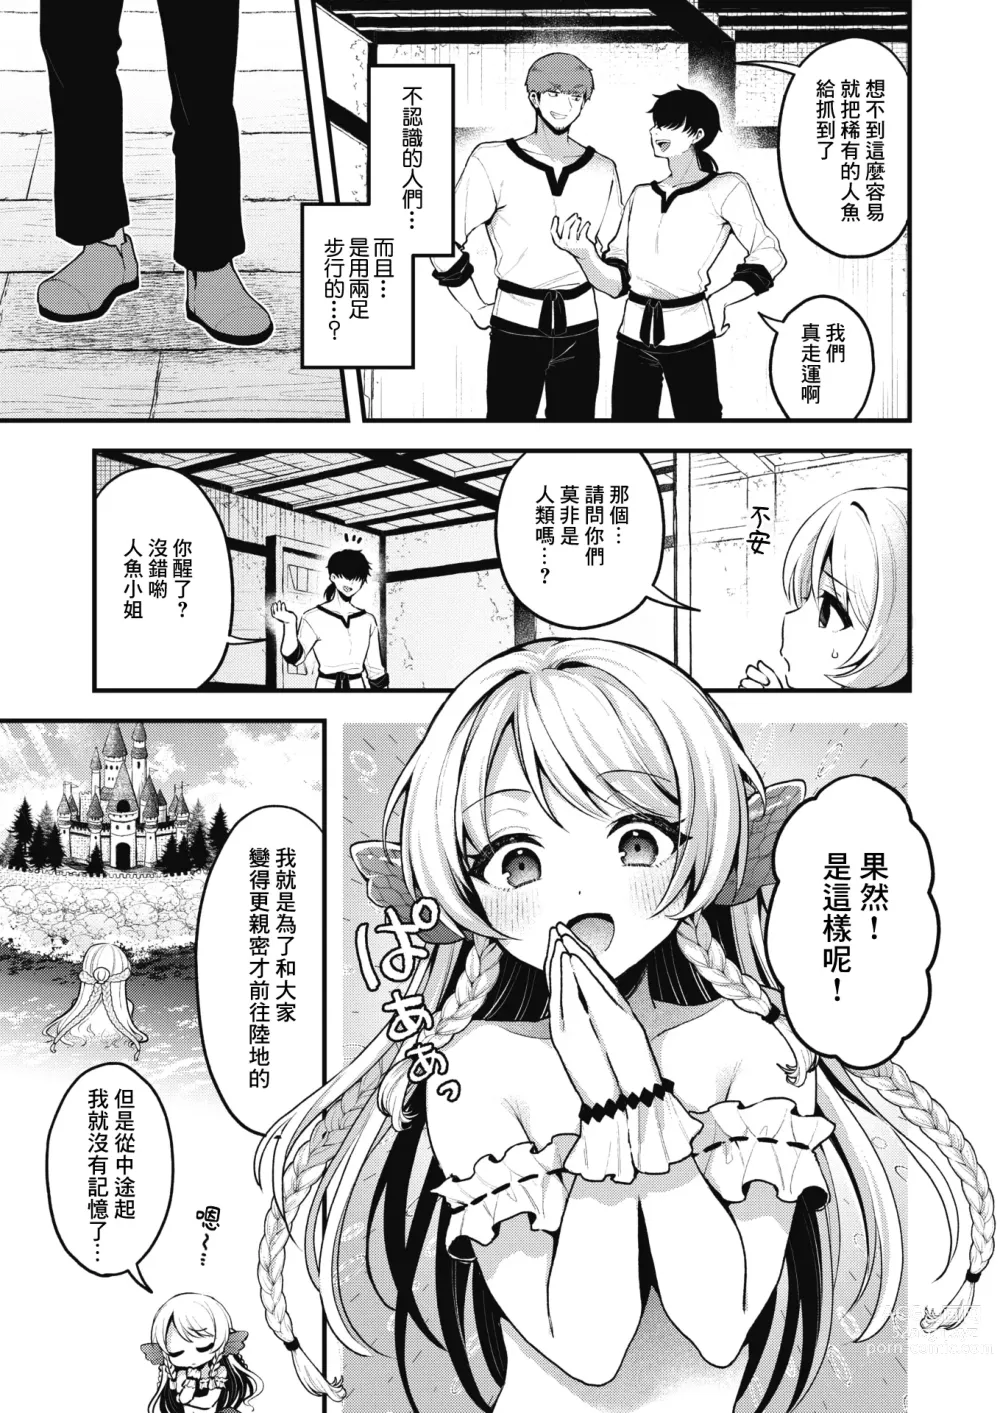 Page 4 of manga 雖然這裡沒有王子大人